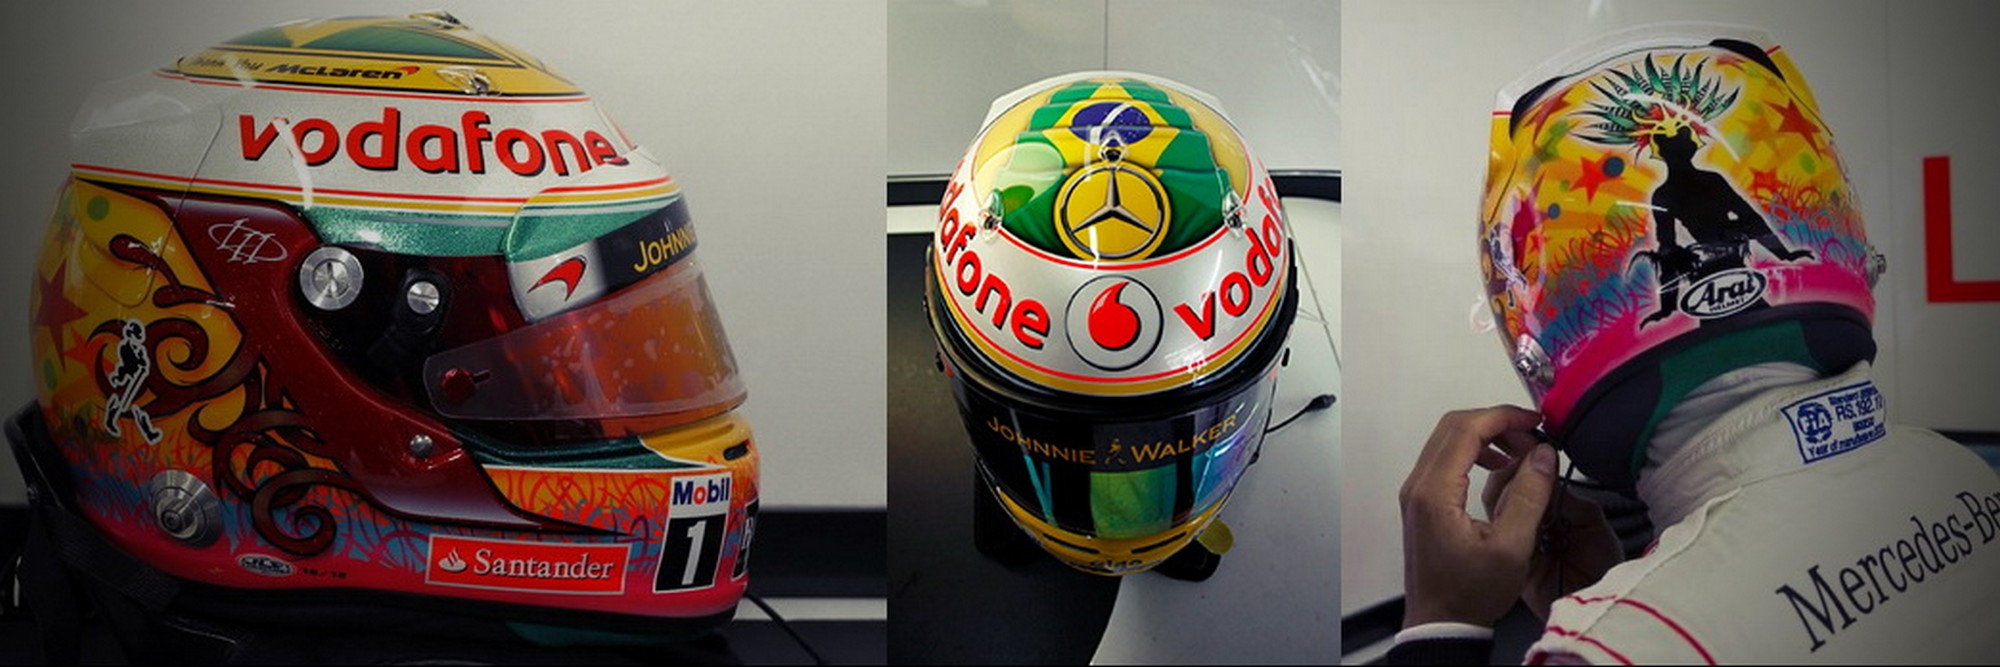 Шлем Льюиса Хэмилтона на Гран-При Бразилии 2012 | 2012 Brazilian Grand Prix helmet of Lewis Hamilton